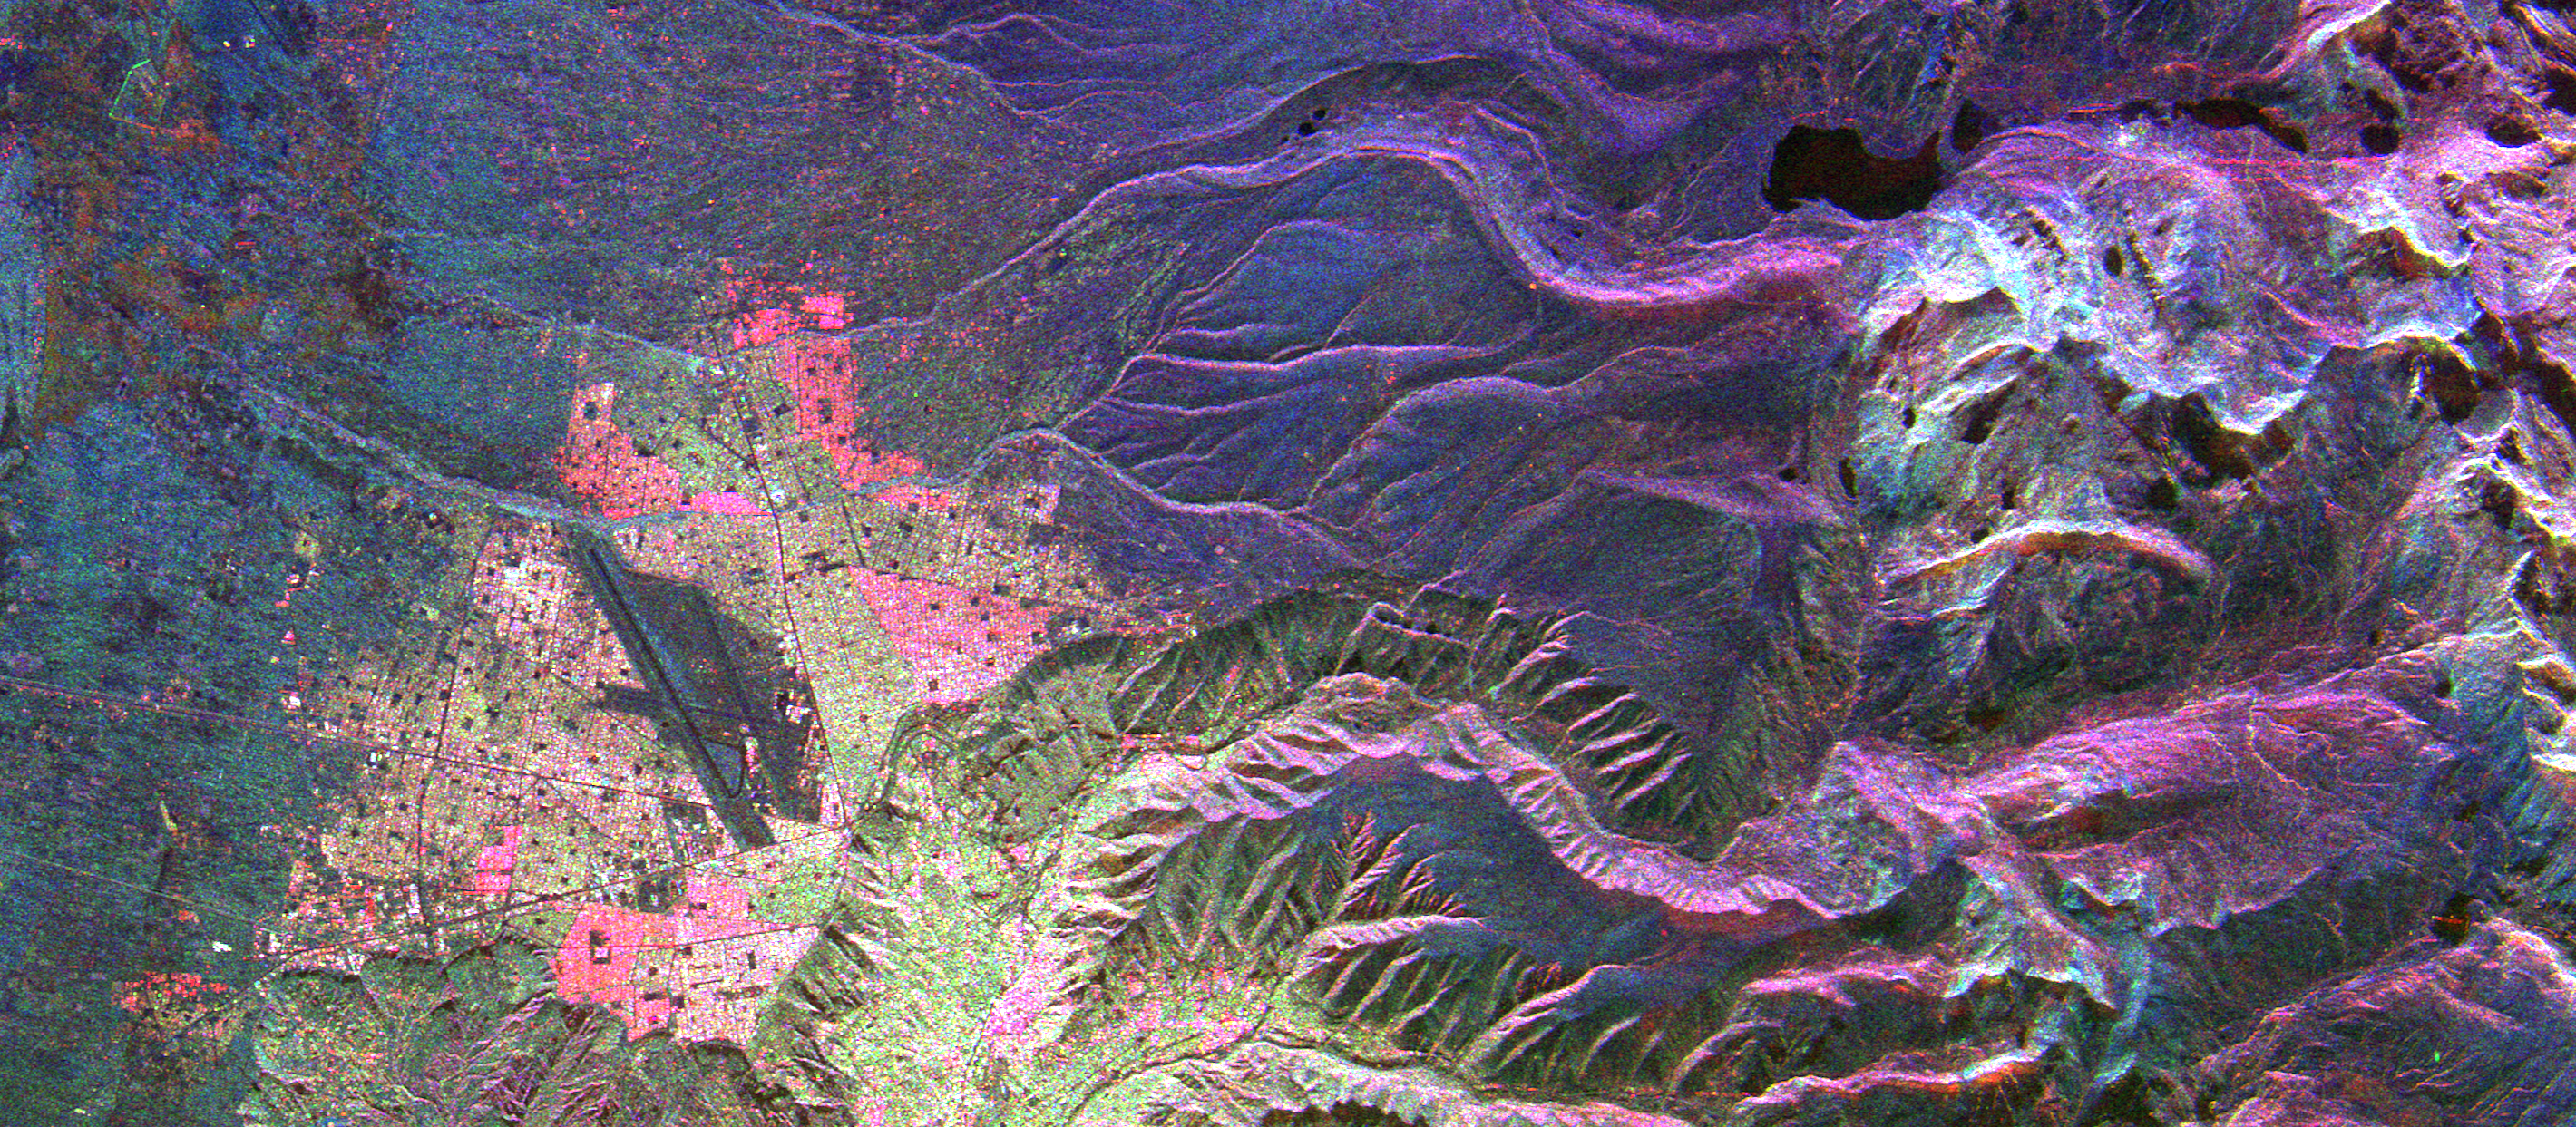 Imagen radar de La Paz, Bolivia